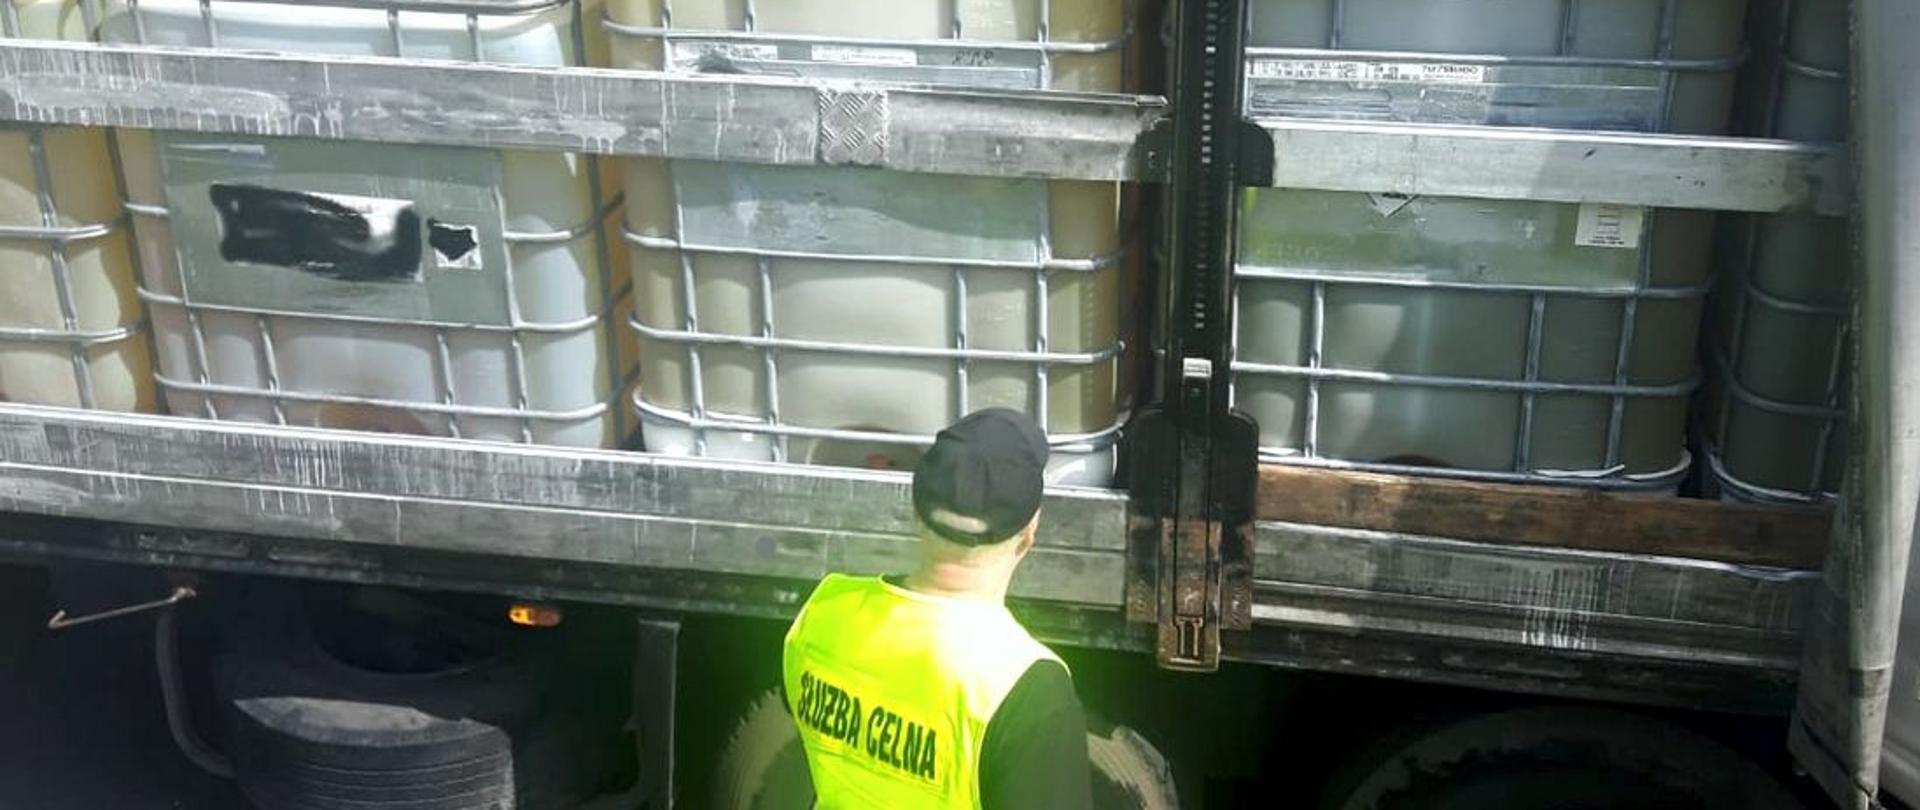 Funkcjonariusz Służby Celno-Skarbowej KAS przed otwartym bokiem naczepy z pojemnikami z substancją ropopochodną.